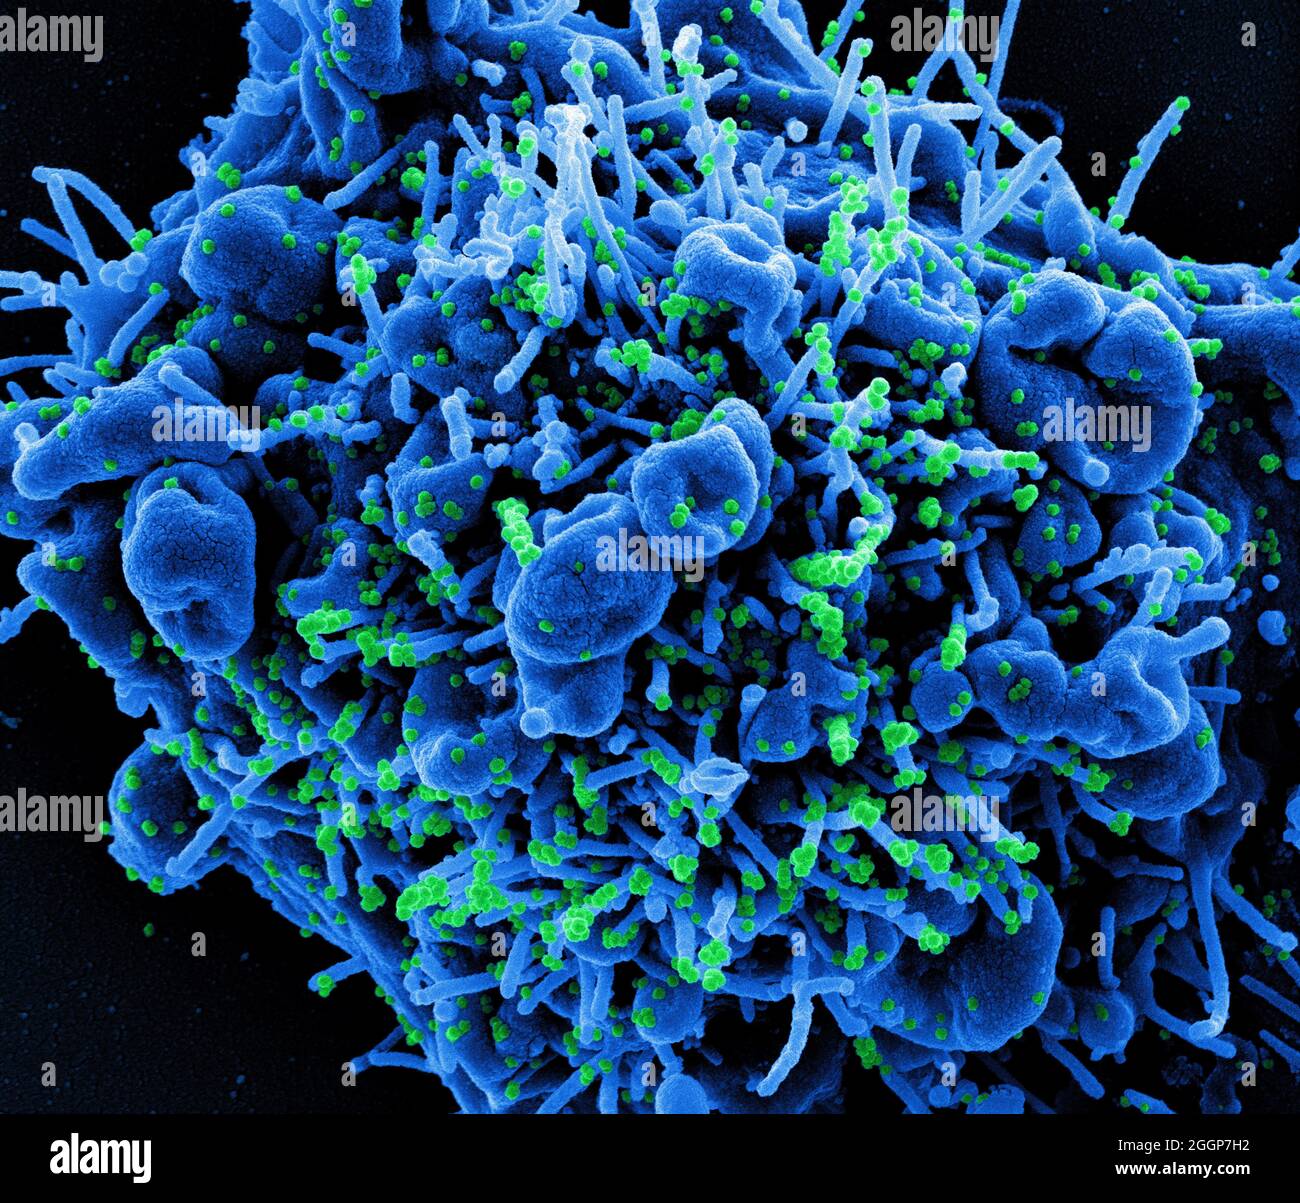 Micrografia elettronica a scansione colorata di una cellula apoptotica (blu) infettata con particelle di virus SARS-COV-2 (verde), isolate da un campione di paziente. Foto Stock